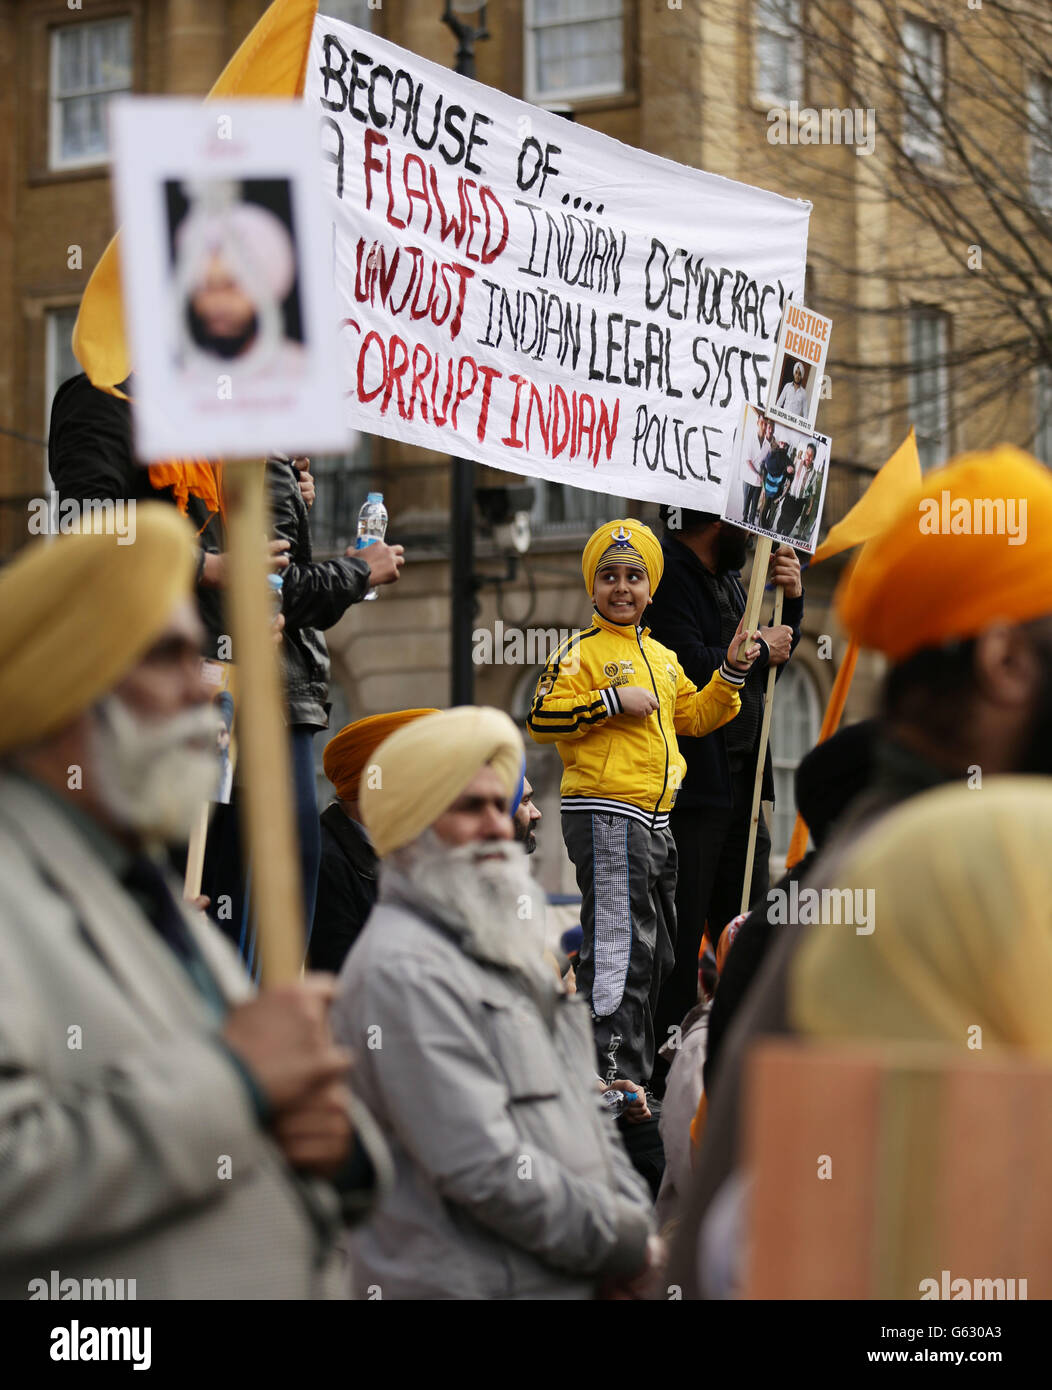 Protest der Federation of Sikh Organizations UK gegen die Todesstrafe für Professor Davinderpal Singh Bhullar - der vom Obersten Gerichtshof Indiens zum Tode verurteilt wurde - gegenüber der Downing Street im Zentrum von London. Stockfoto